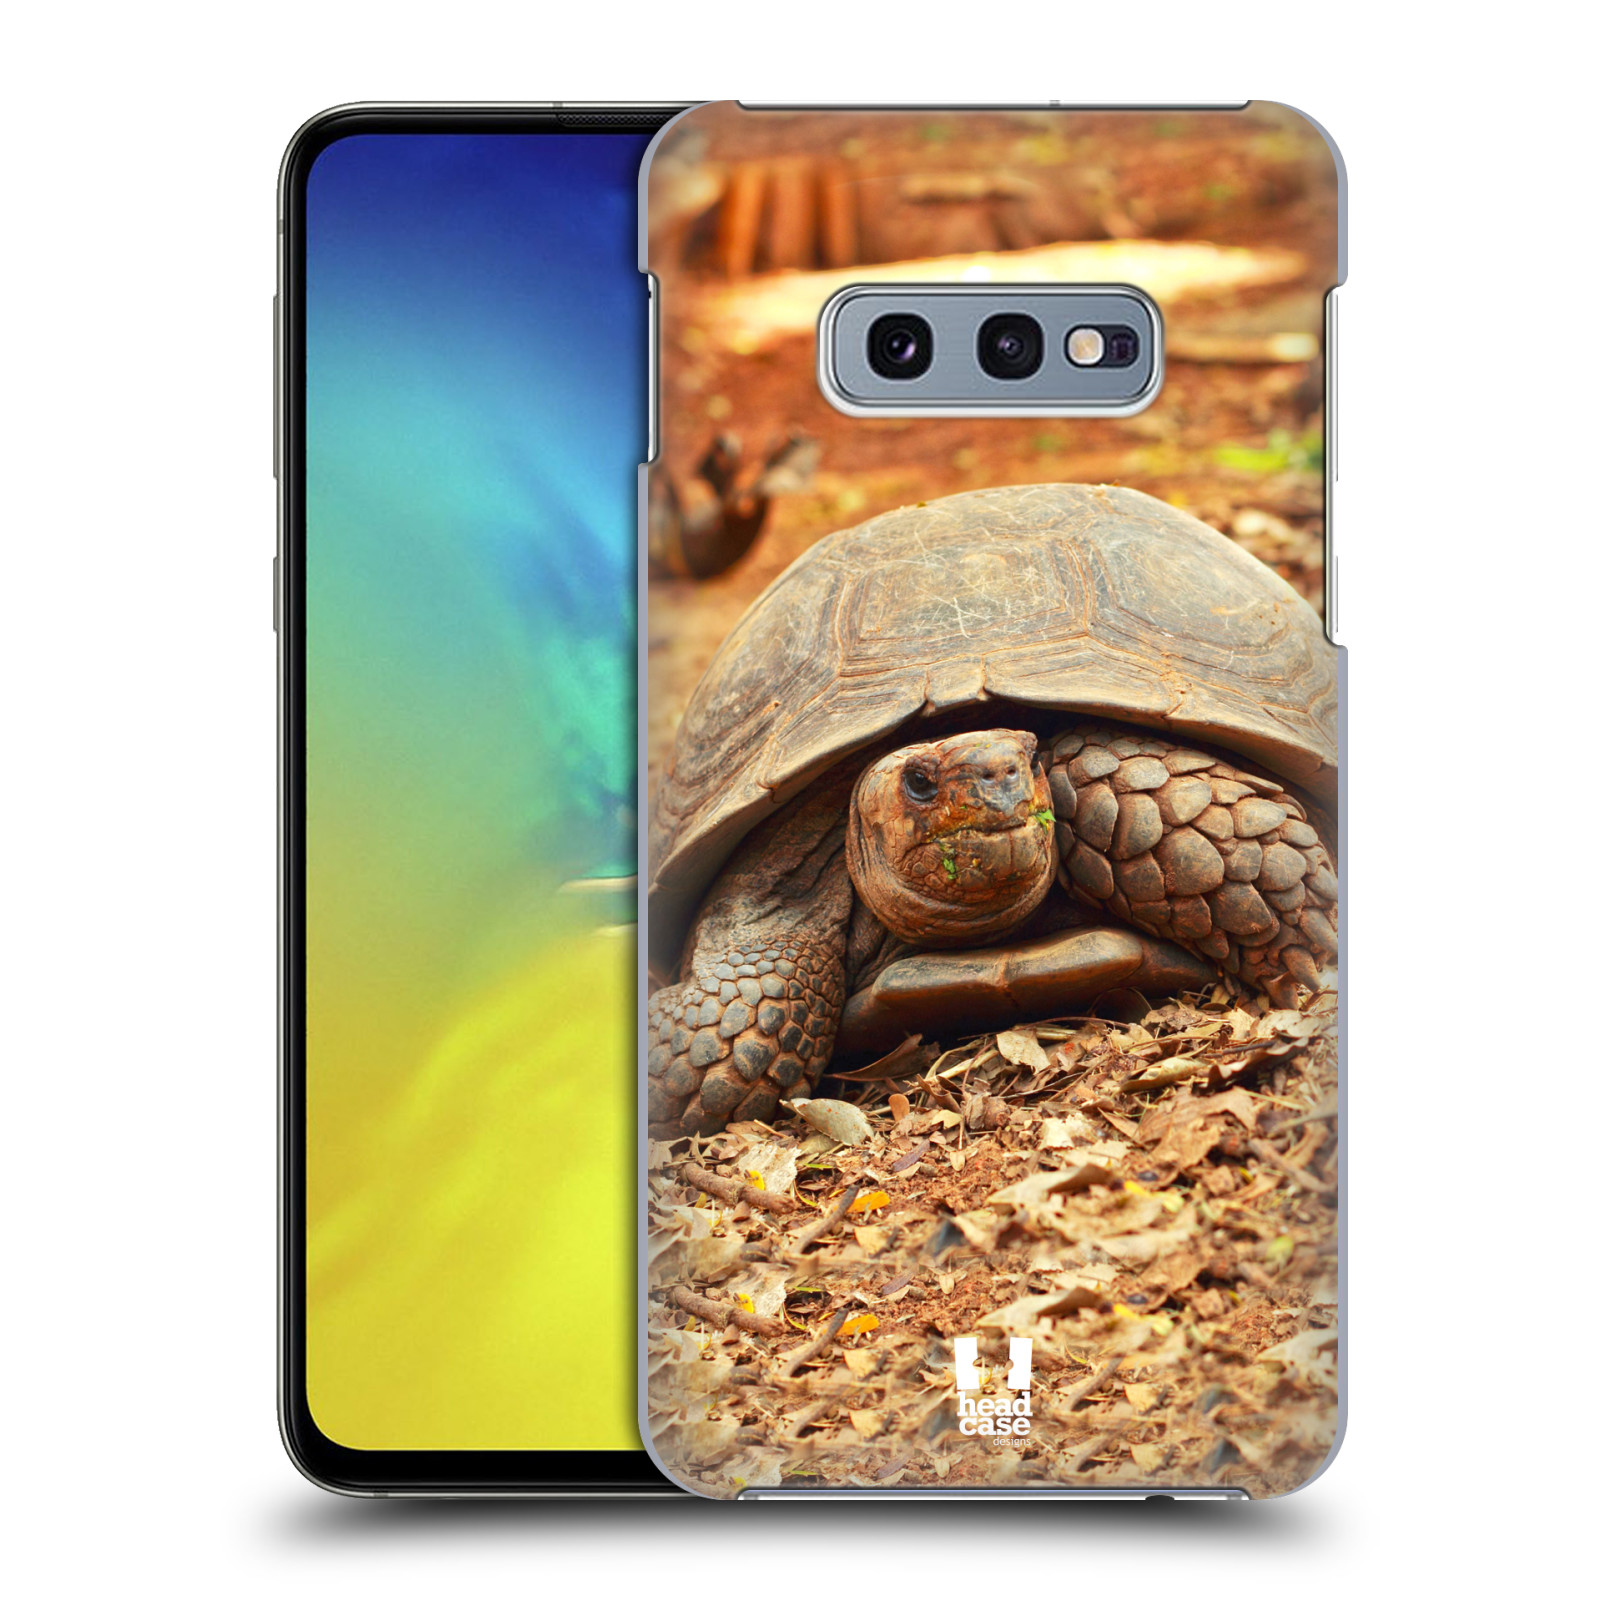 Pouzdro na mobil Samsung Galaxy S10e - HEAD CASE - vzor slavná zvířata foto želva